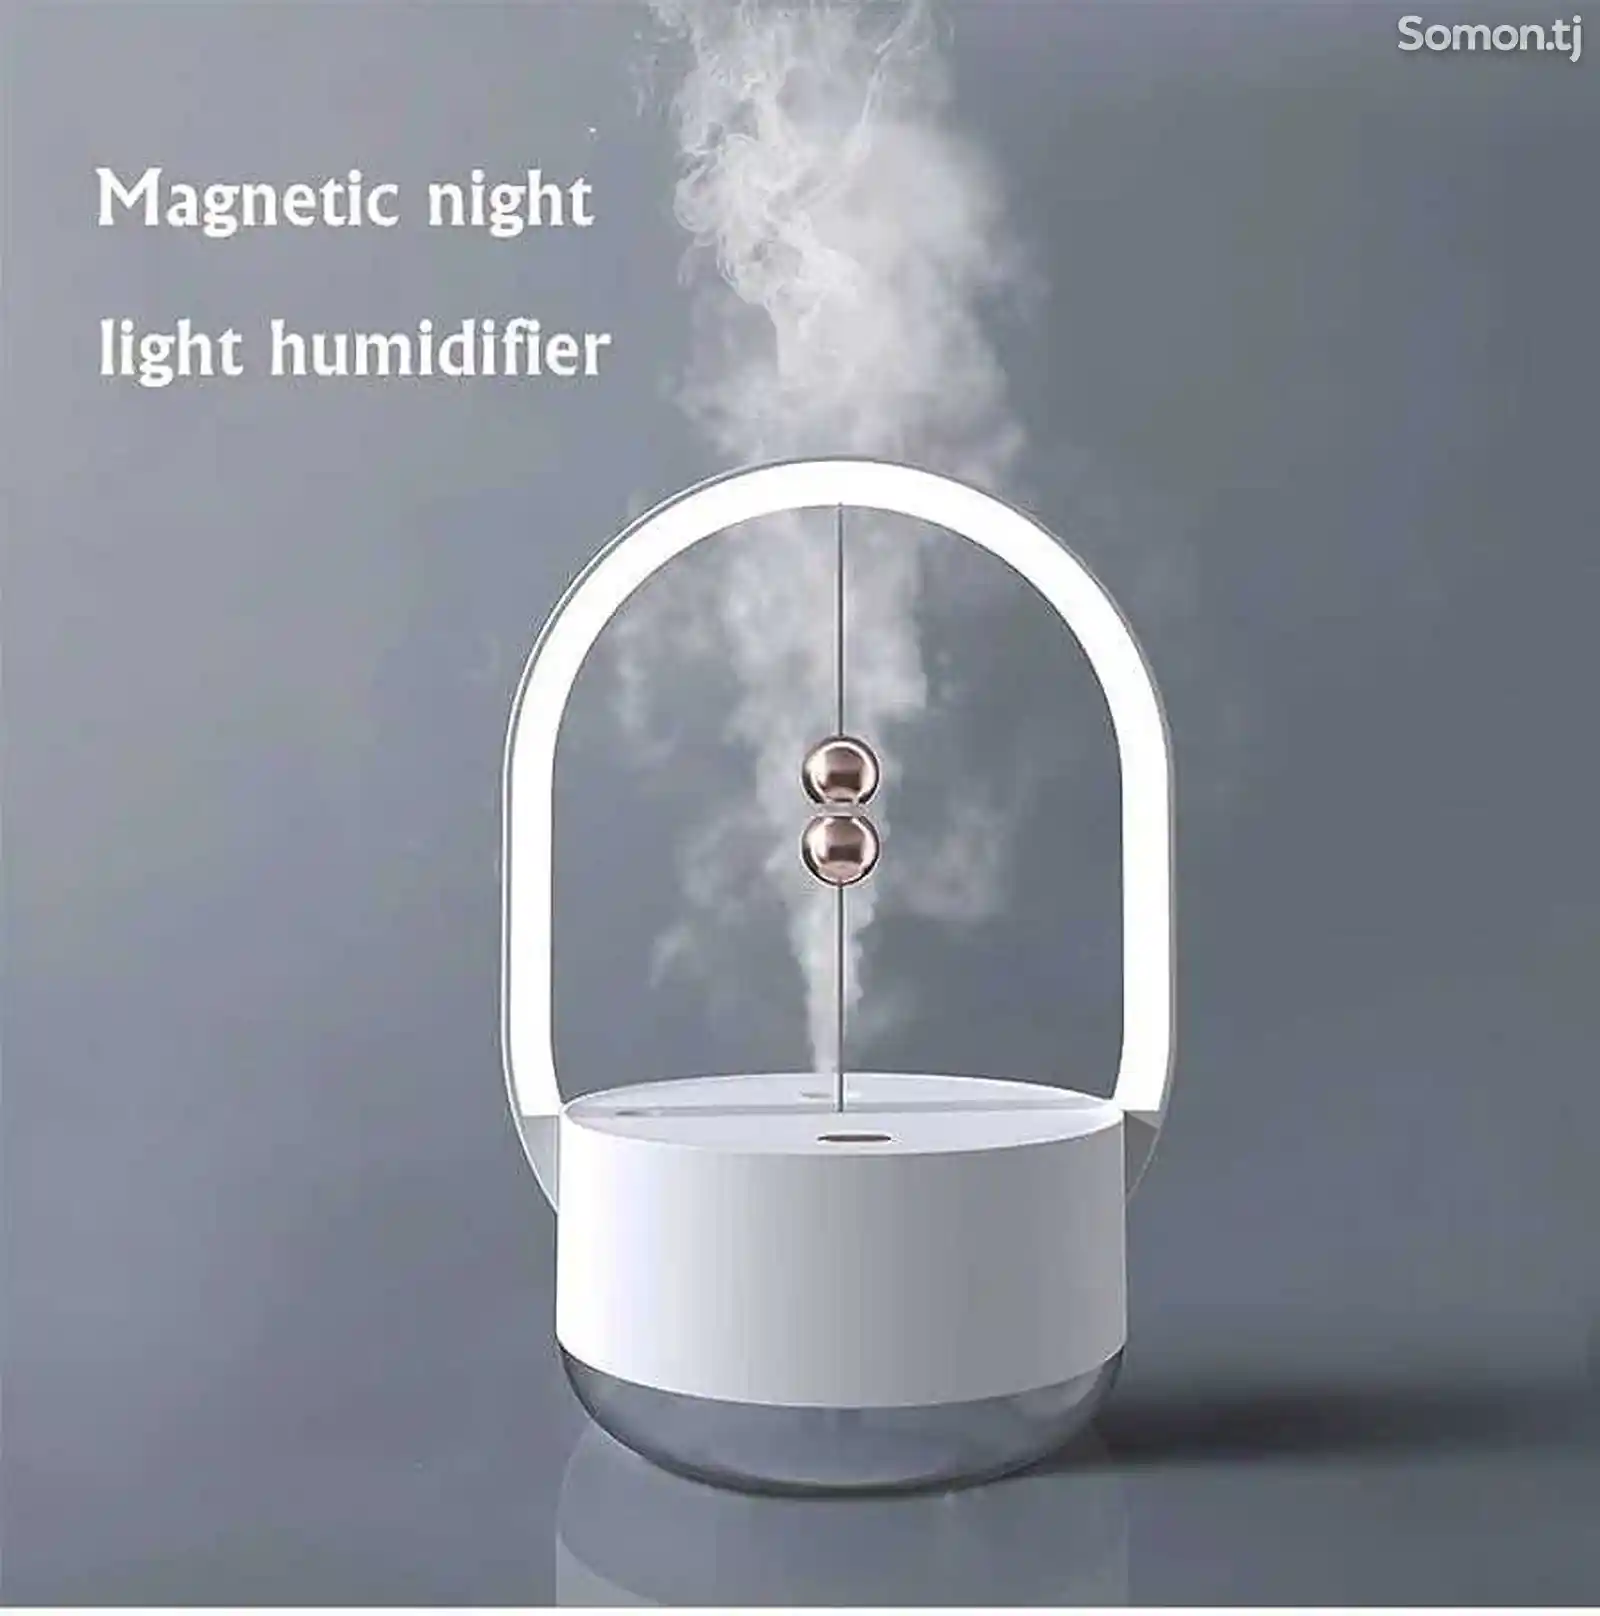 Увлажнитель воздуха Magnetic night light humidifier-3